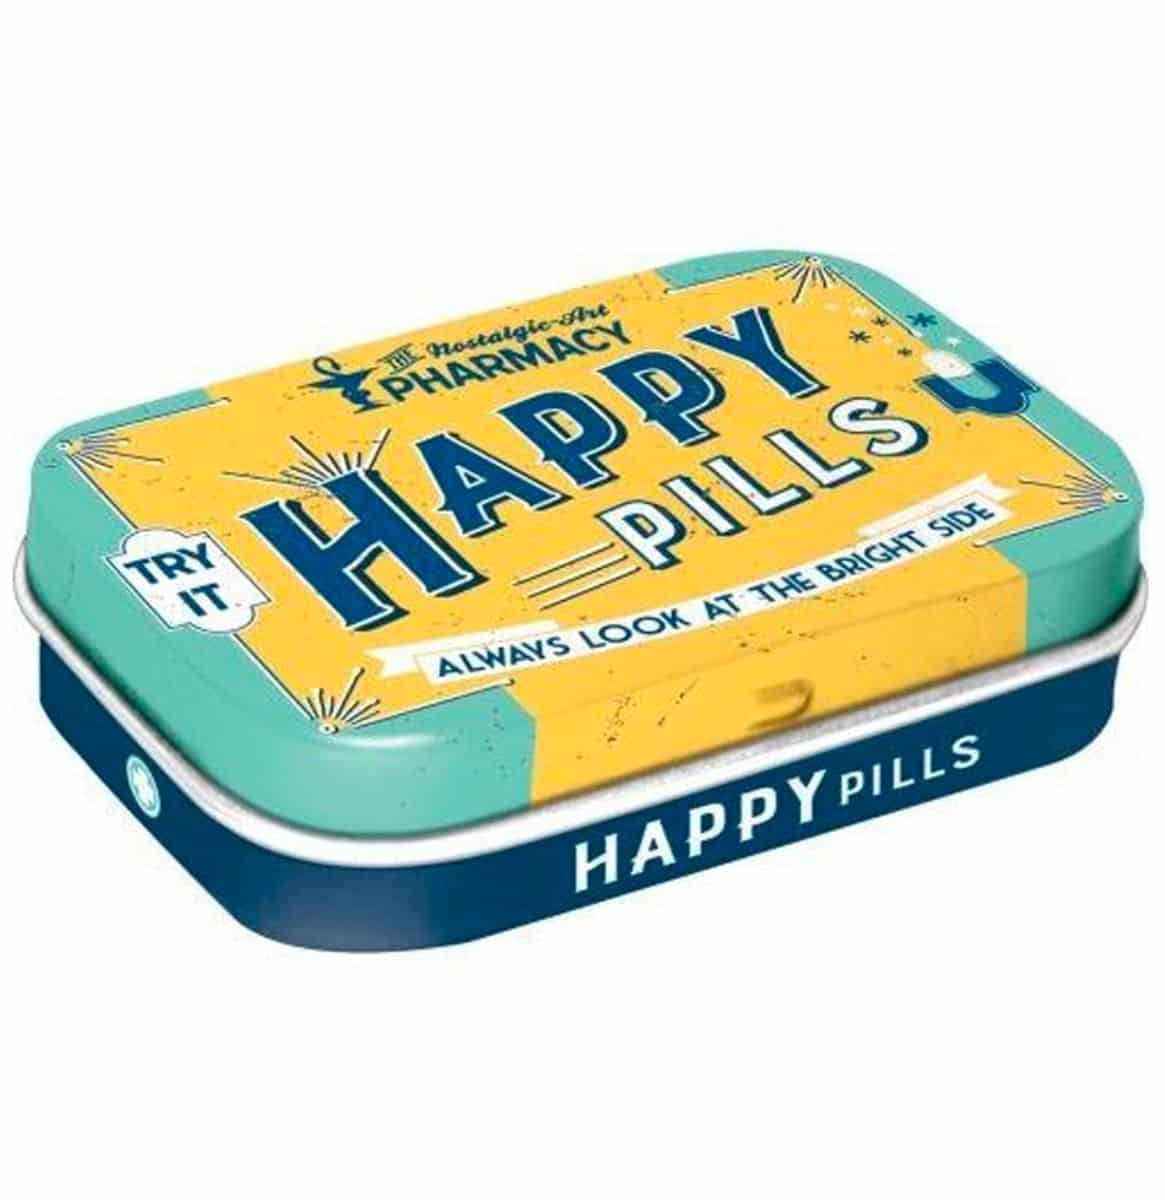 Mint Happy Pills met Muntsnoepjes